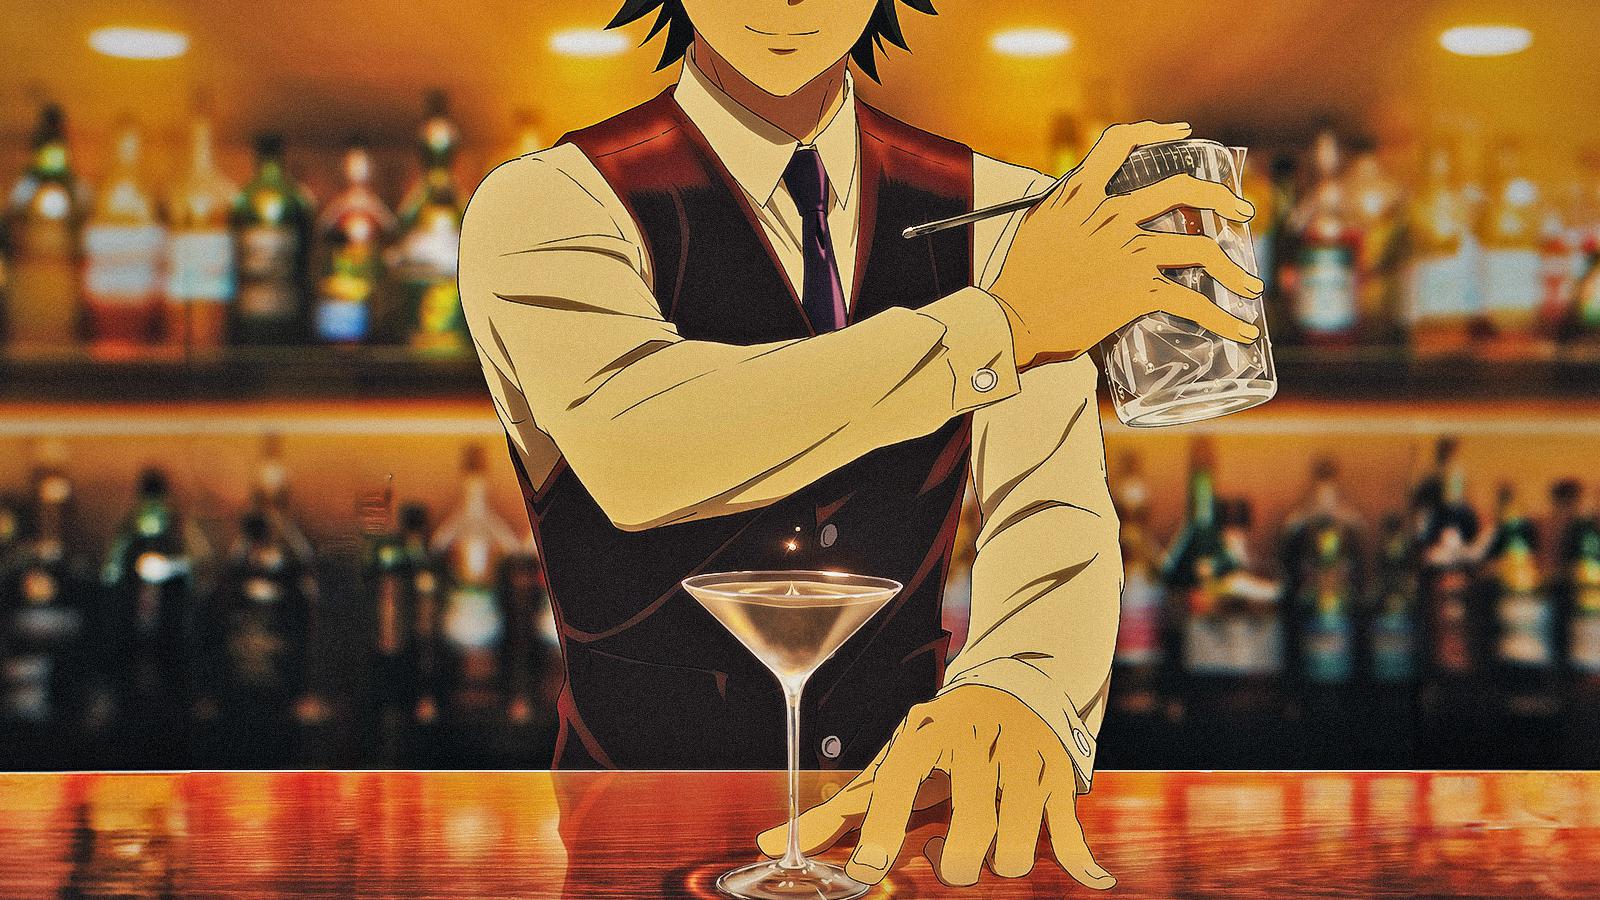 Bartender - Glass of God, la recensione dei primi episodi: su Crunchyroll ogni cocktail è speciale